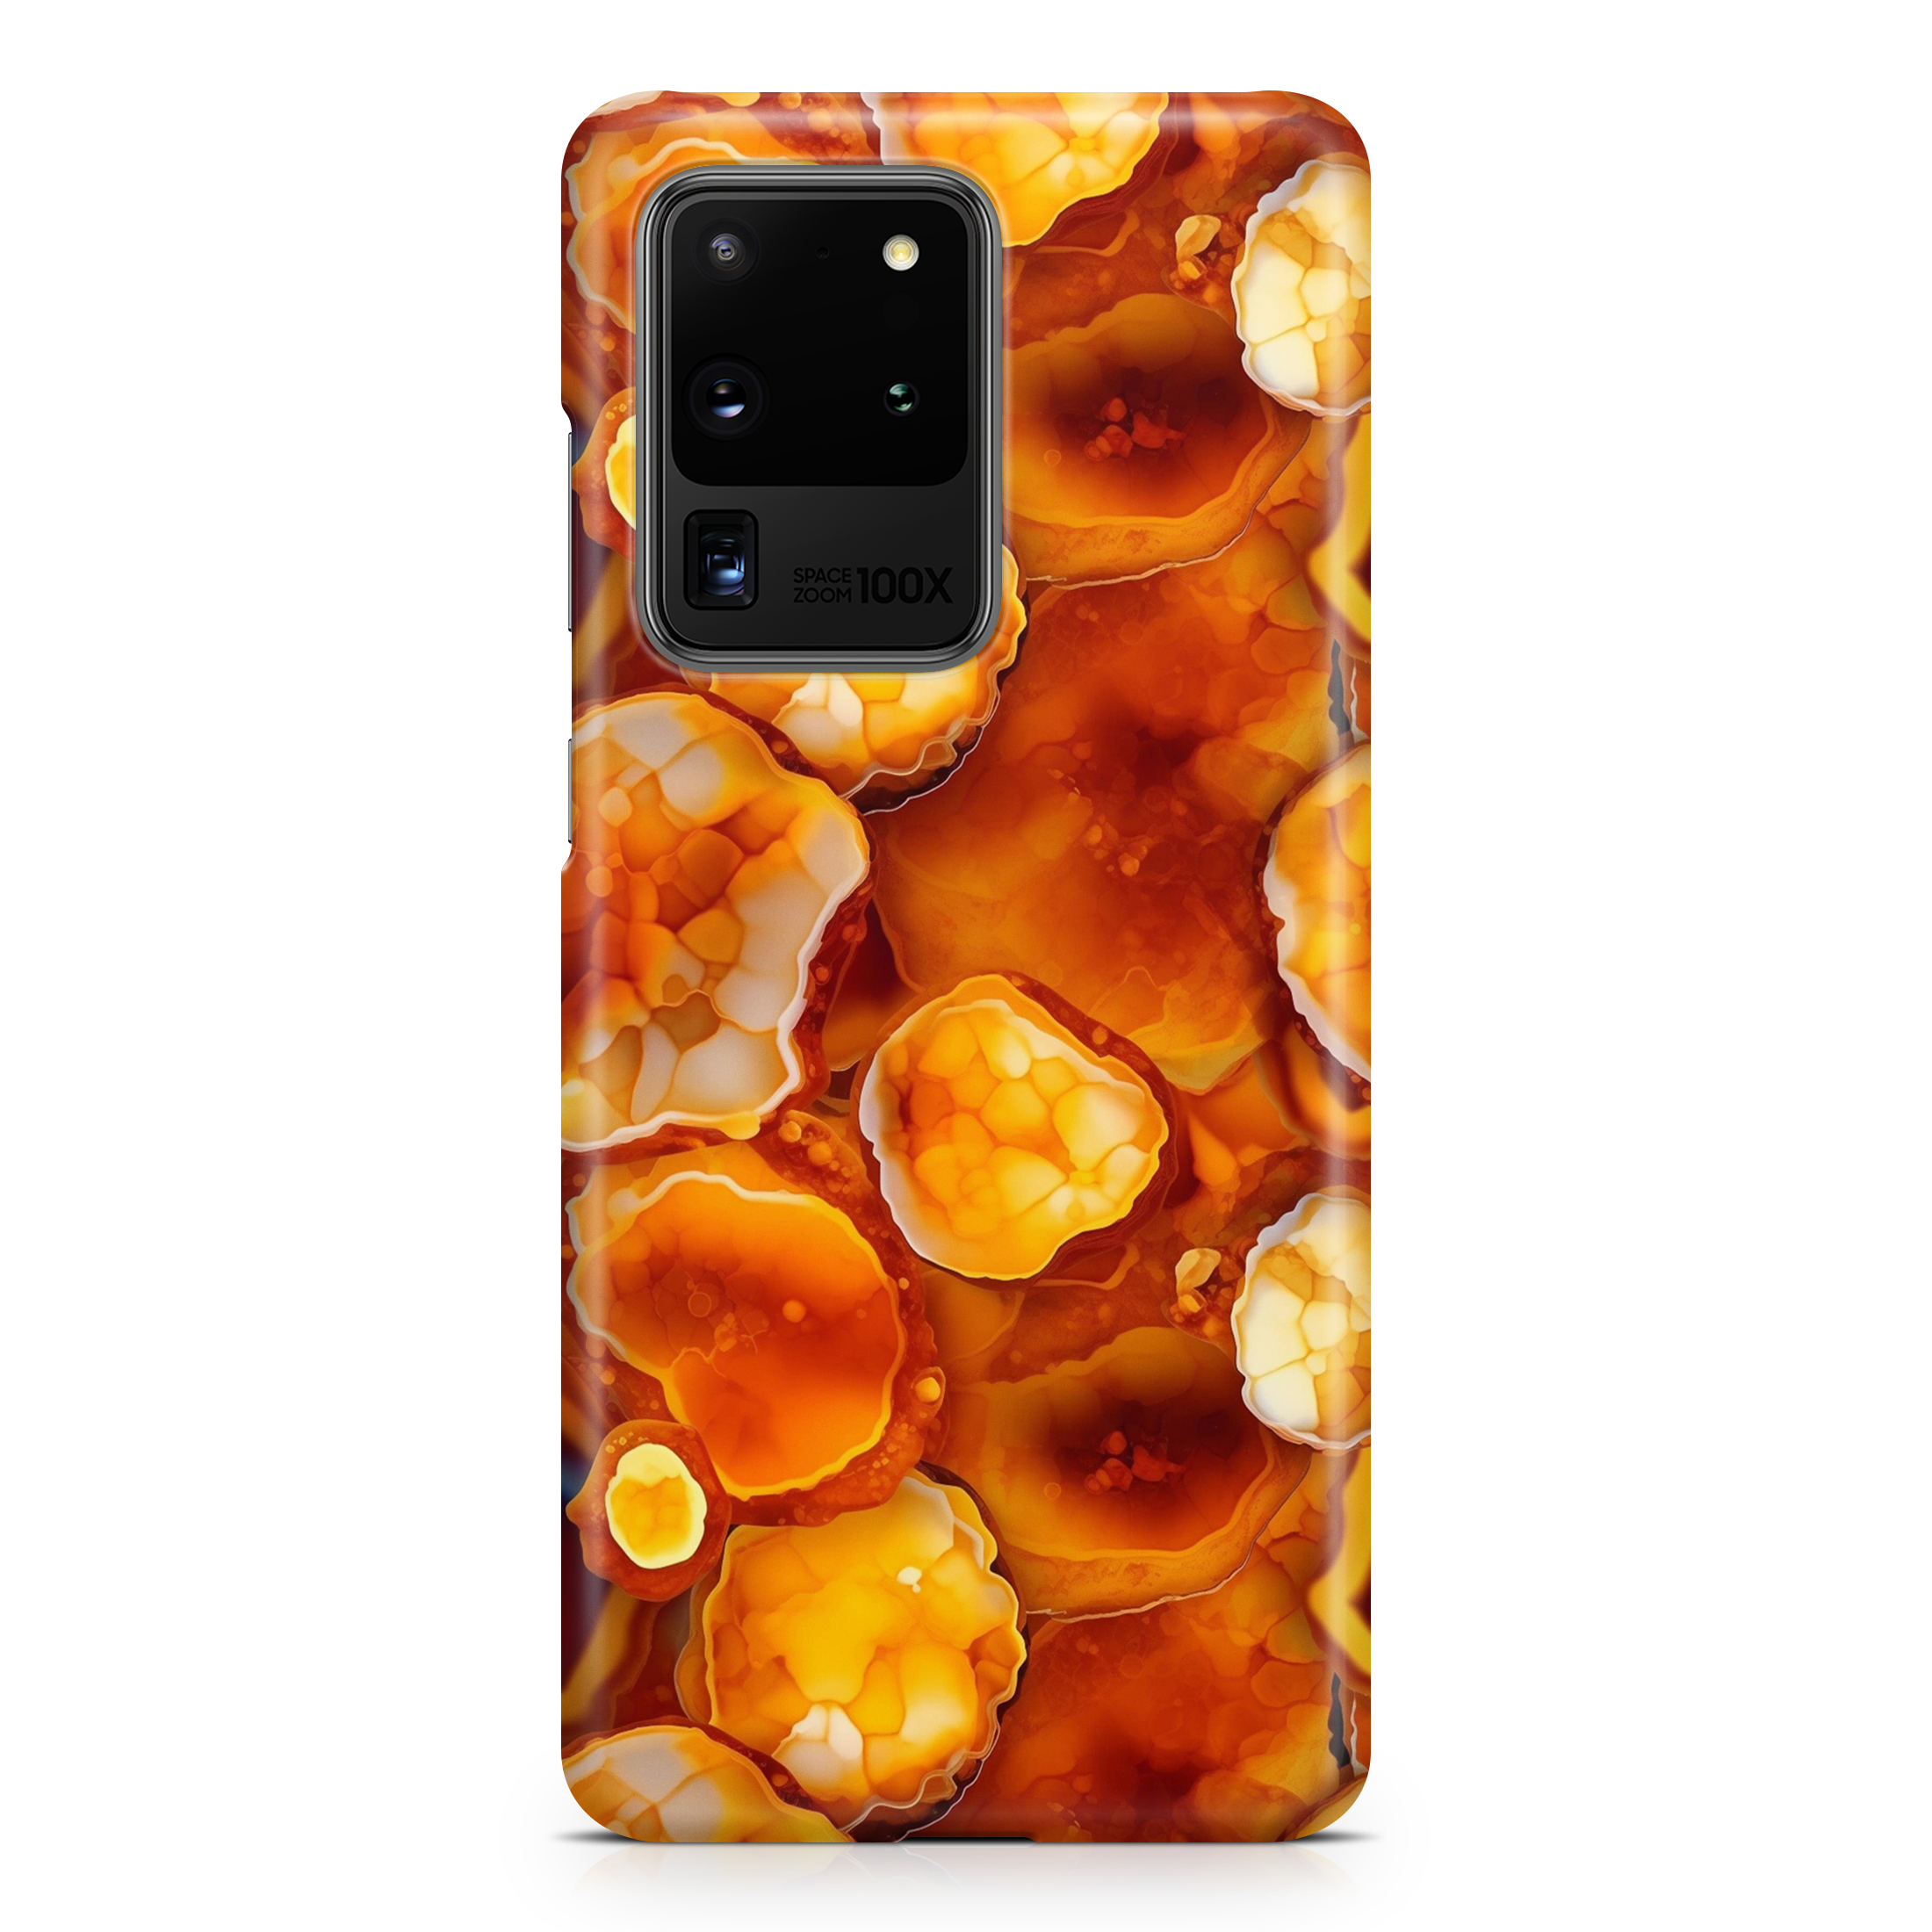 Orange Geode - Samsung phone case designs by CaseSwagger